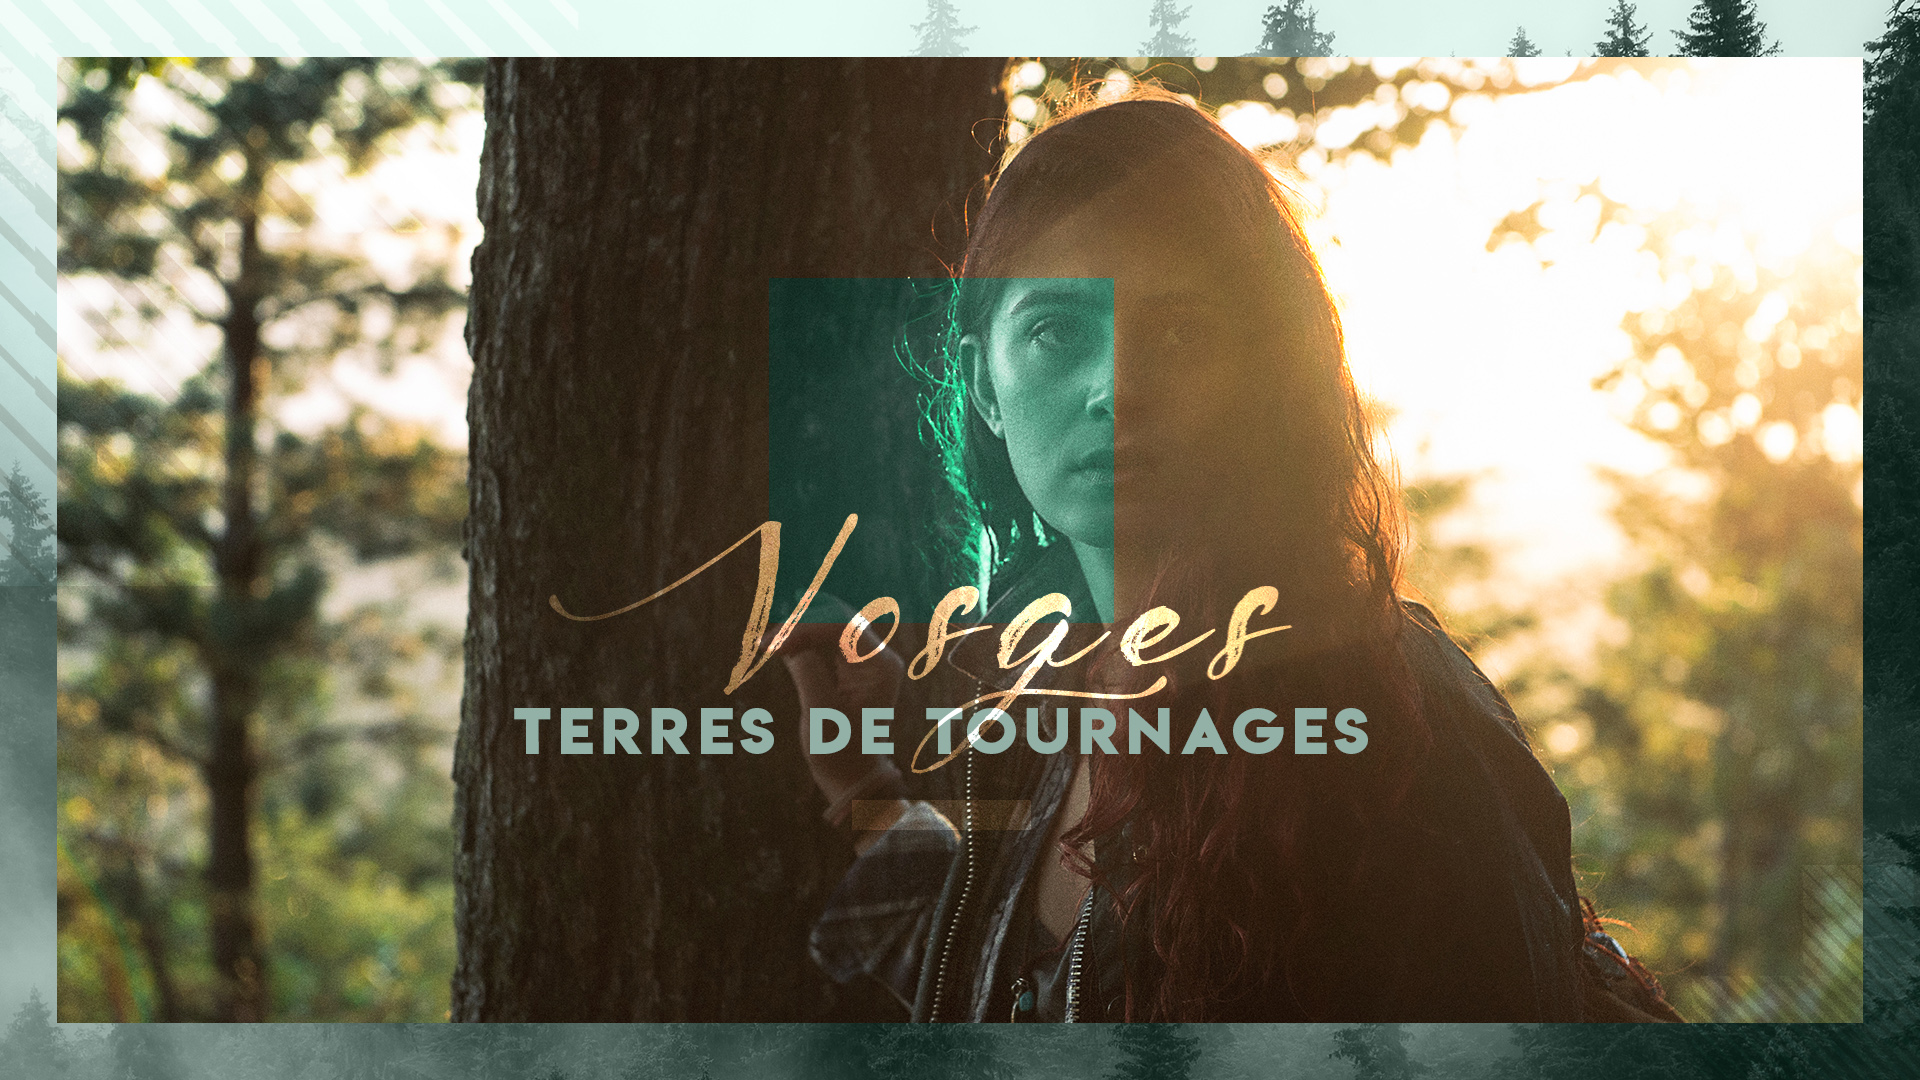 Tournage pour TF1 dans les Vosges : de jeunes figurants sont recherchés